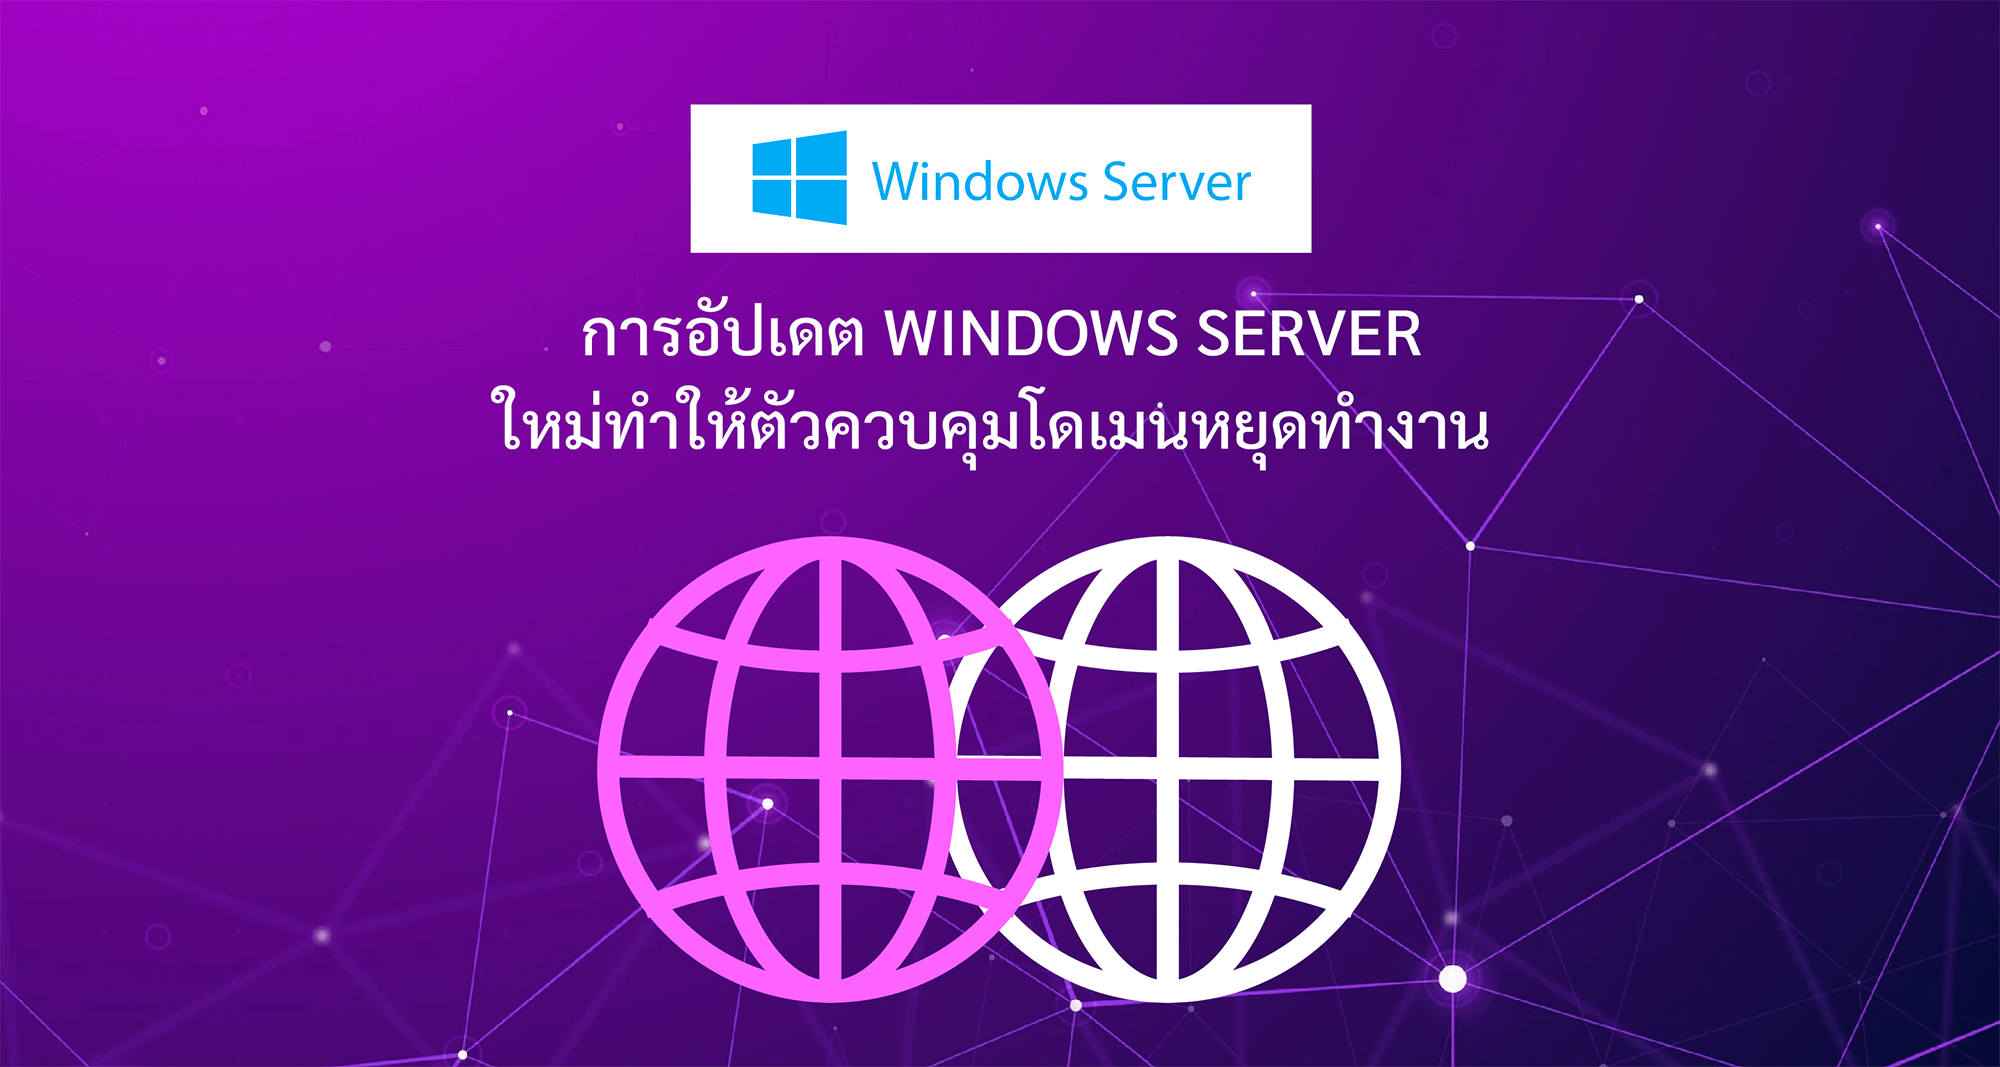 การอัปเดต Windows Server ใหม่ทำให้ตัวควบคุมโดเมนหยุดทำงาน